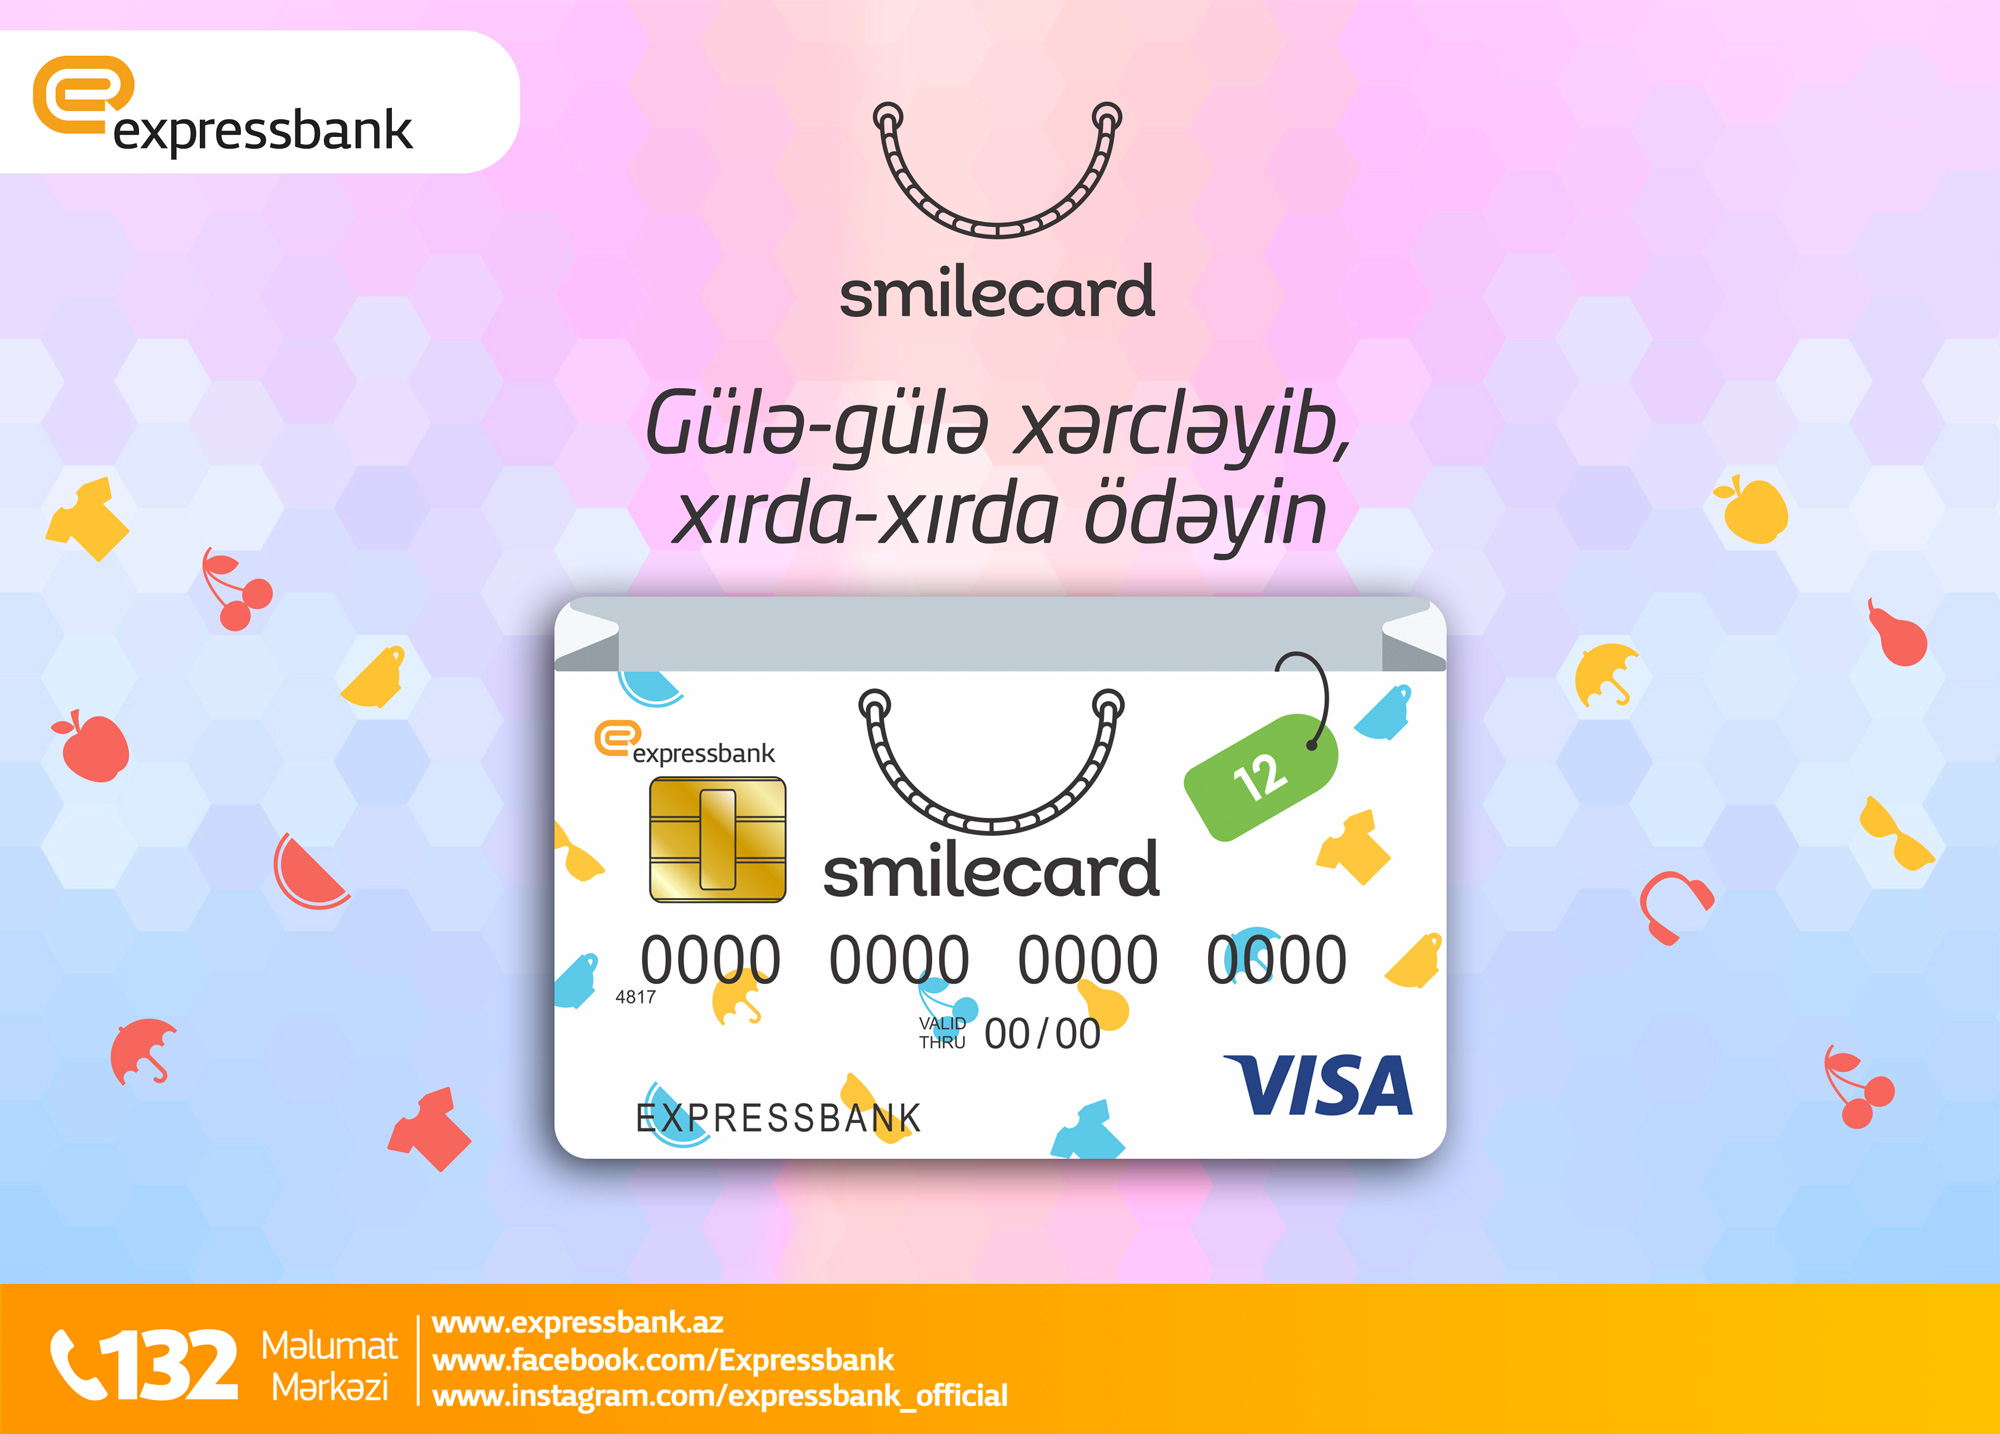 Expressbank  SmileСard taksit kartı üzrə müştərilərə geniş imkanlar təklif edir